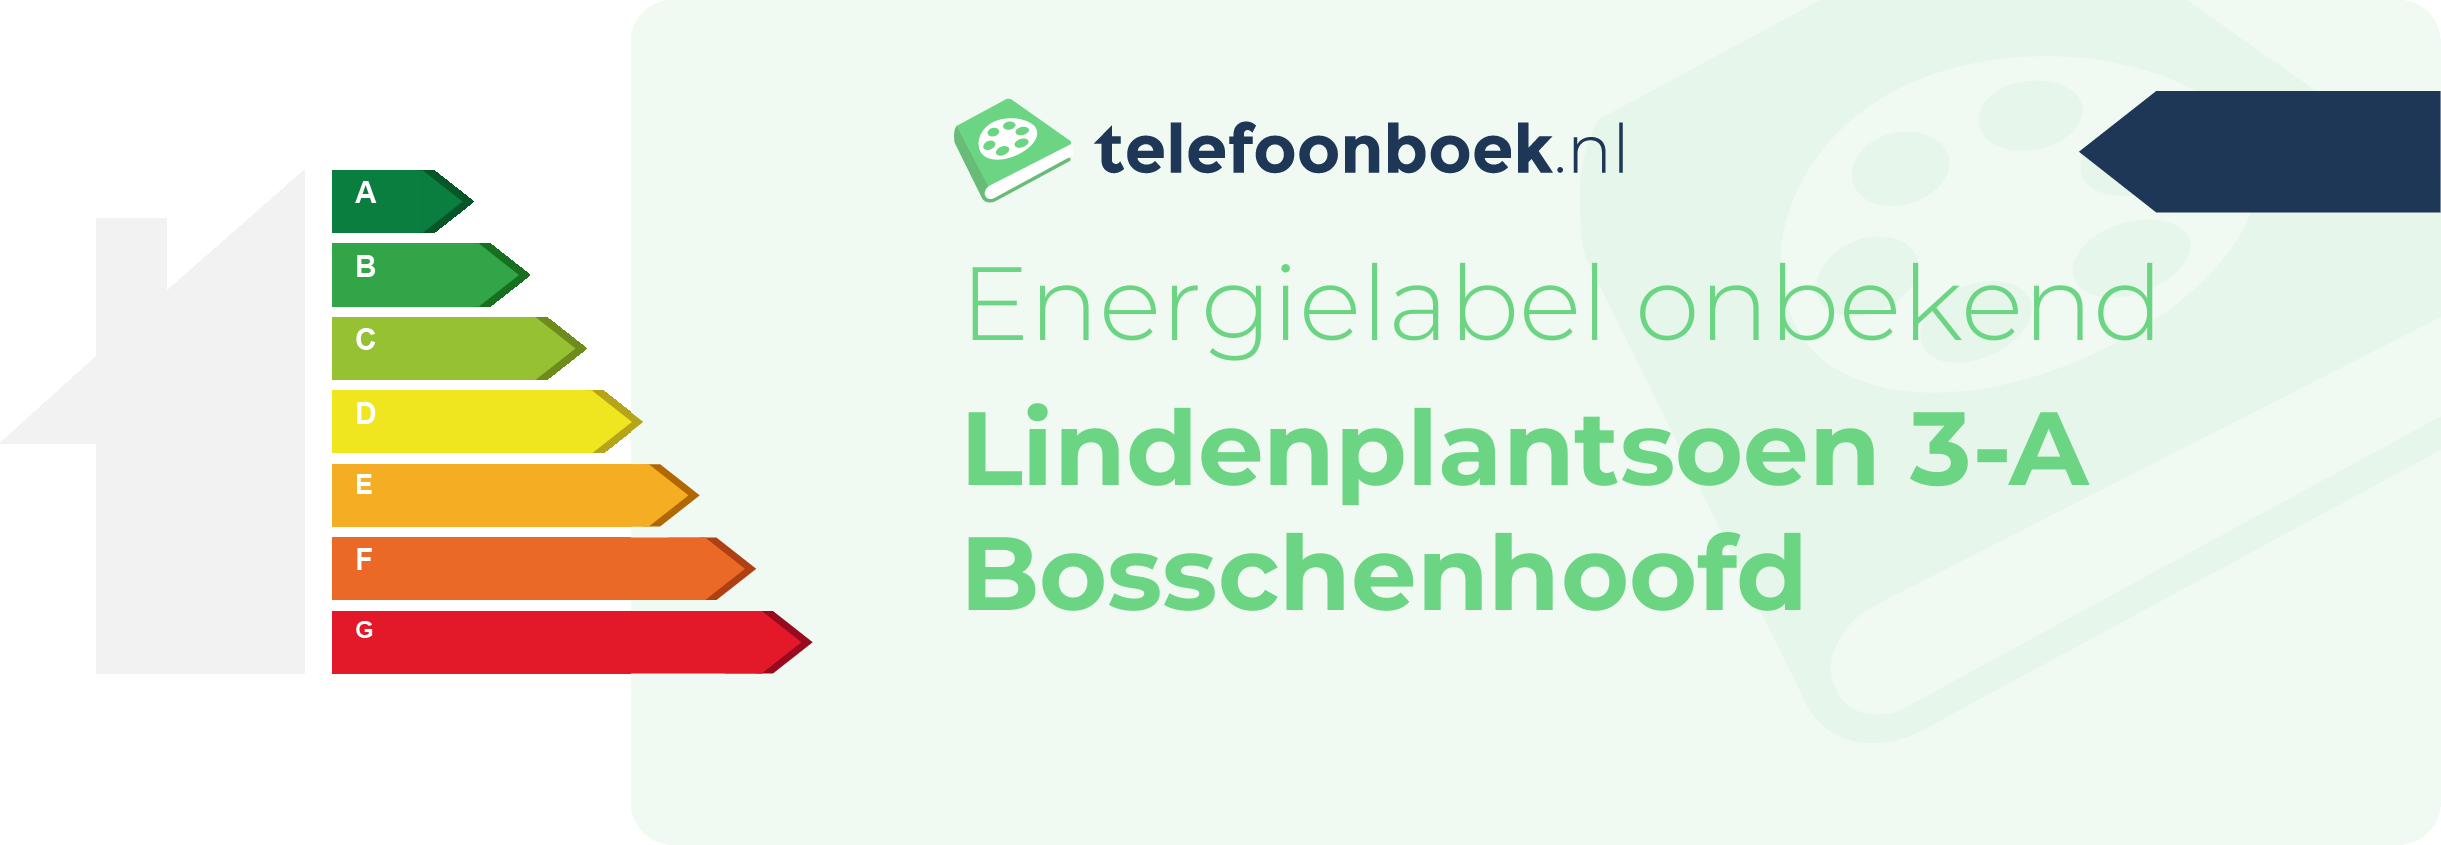 Energielabel Lindenplantsoen 3-A Bosschenhoofd